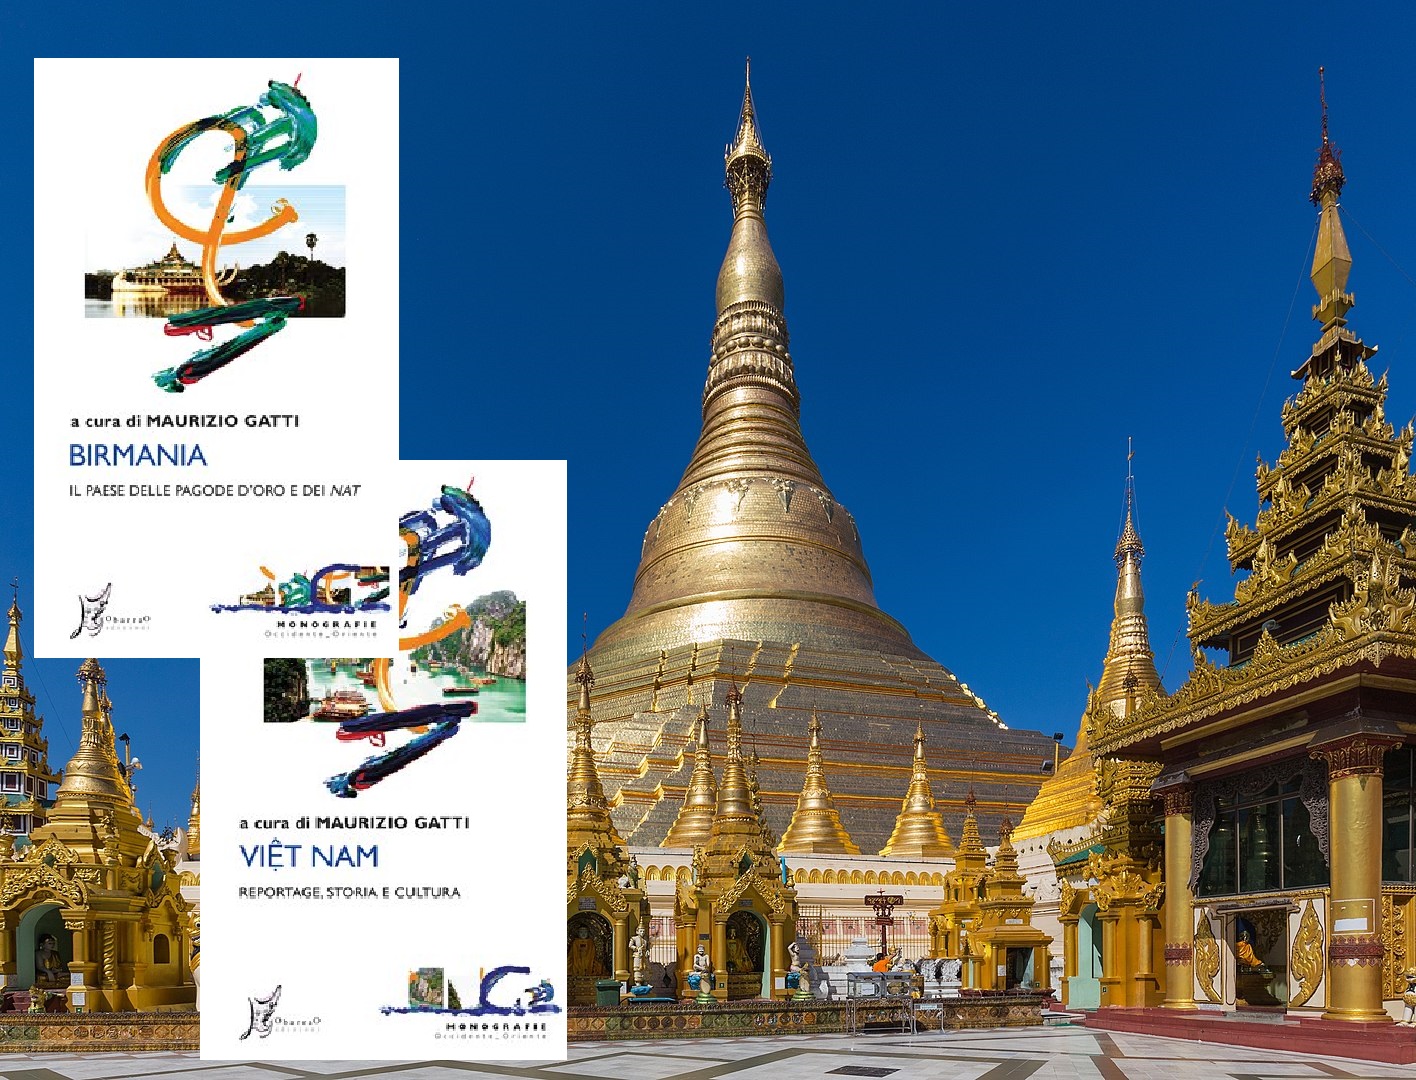 Birmania e Vietnam inaugurano le monografie di O barra O edizioni